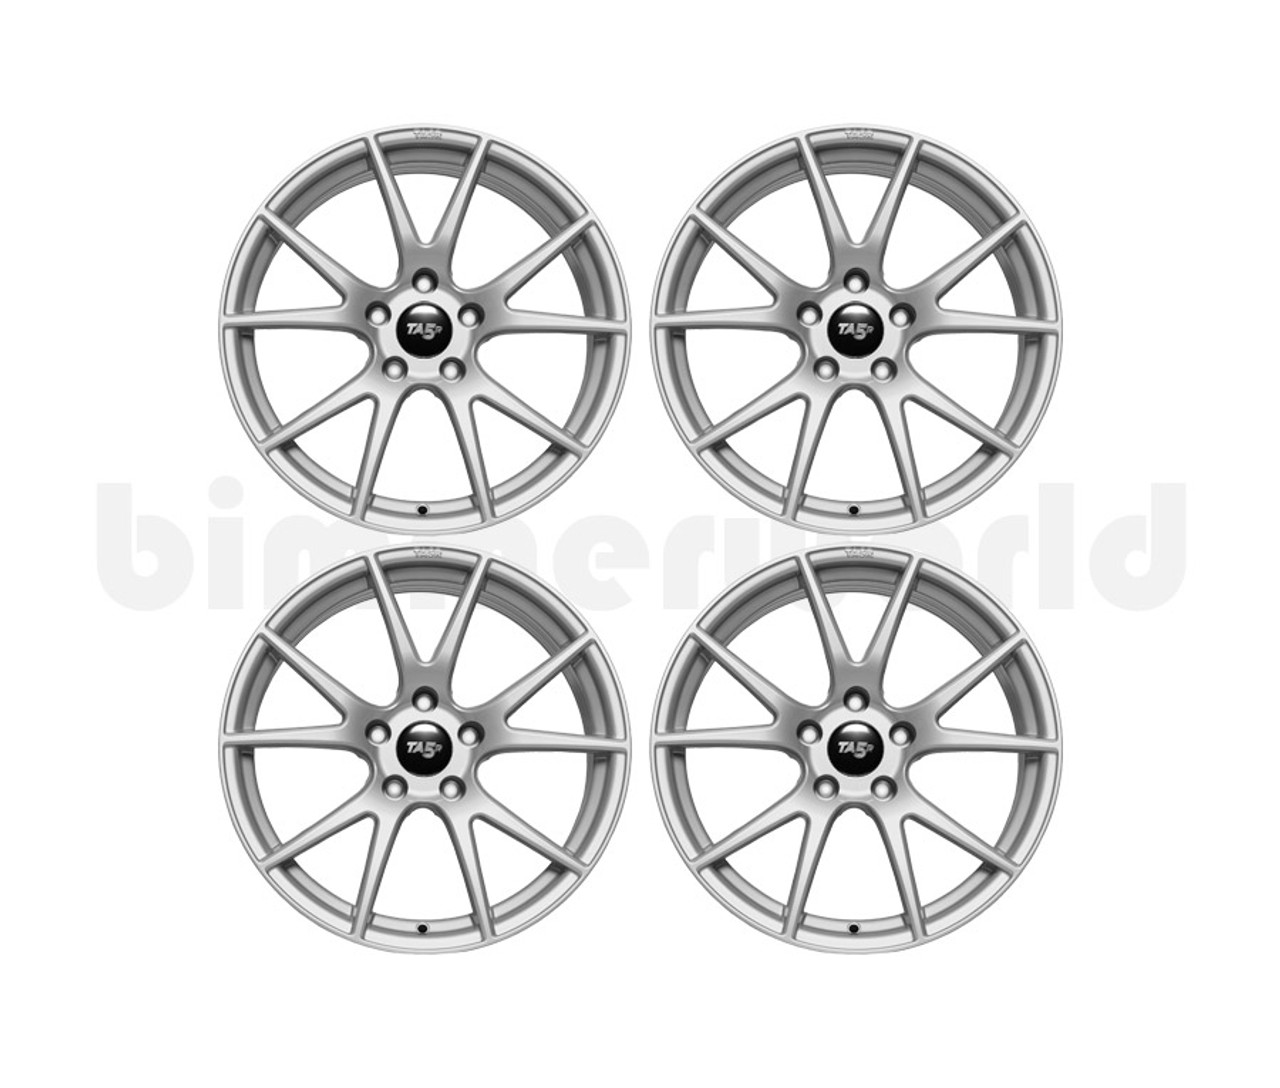 BimmerWorld 18x9.0 TA5R Wheel Set - E36, E46, F3X, E60 Xi, Z3, E85  - Gloss Gunmetal